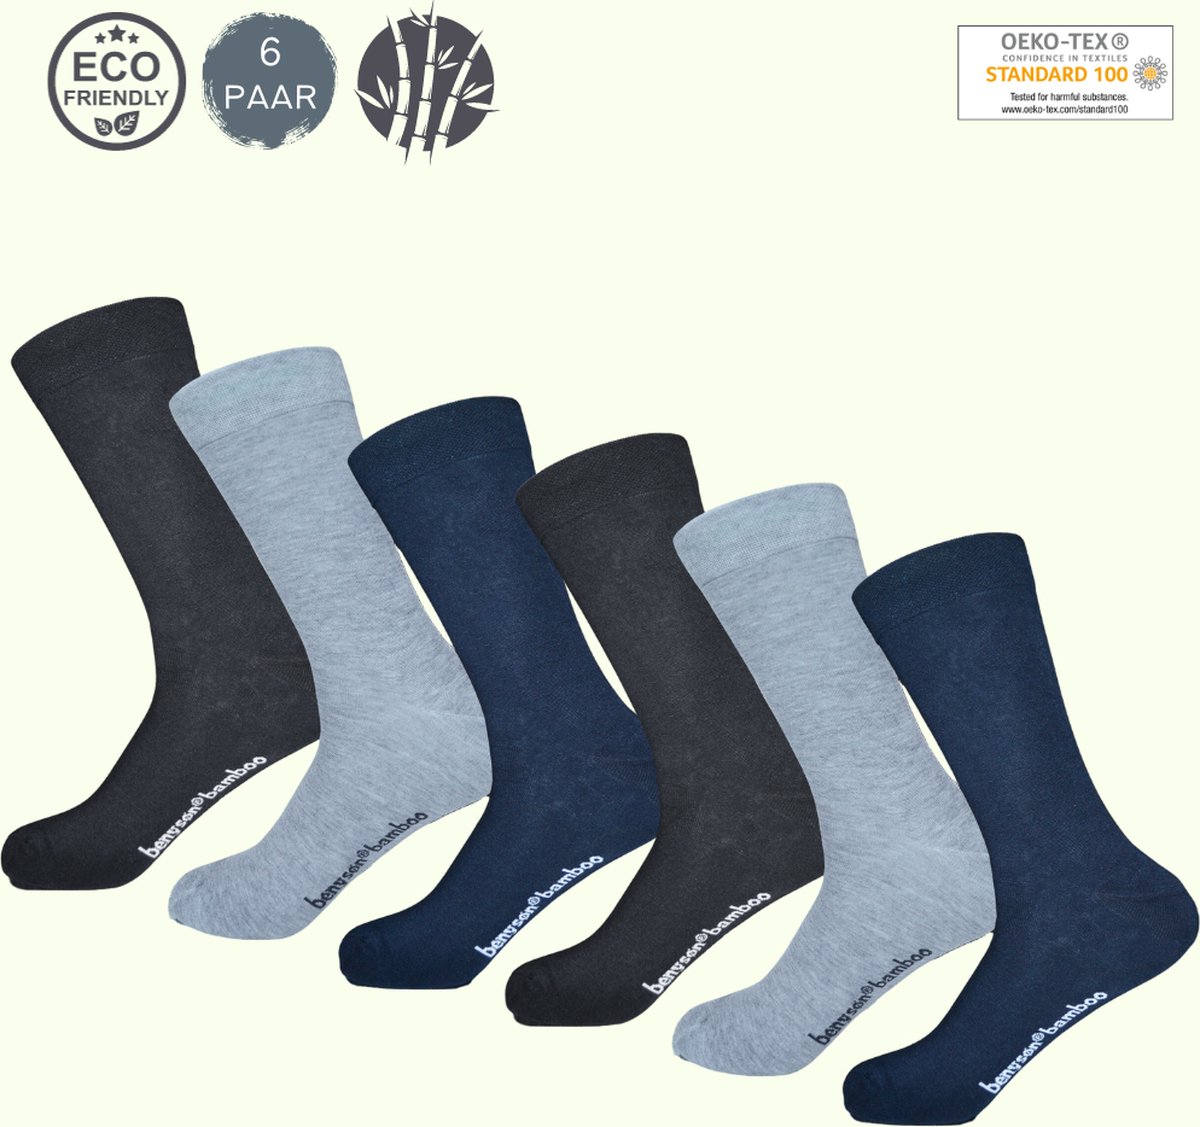 BENYSØN® Bamboe Sokken 6 Paar | Naadloos | Blauw, Grijs, Zwart | Maat 35-40 | Seamless Toes | OEKO-TEX Standaard 100